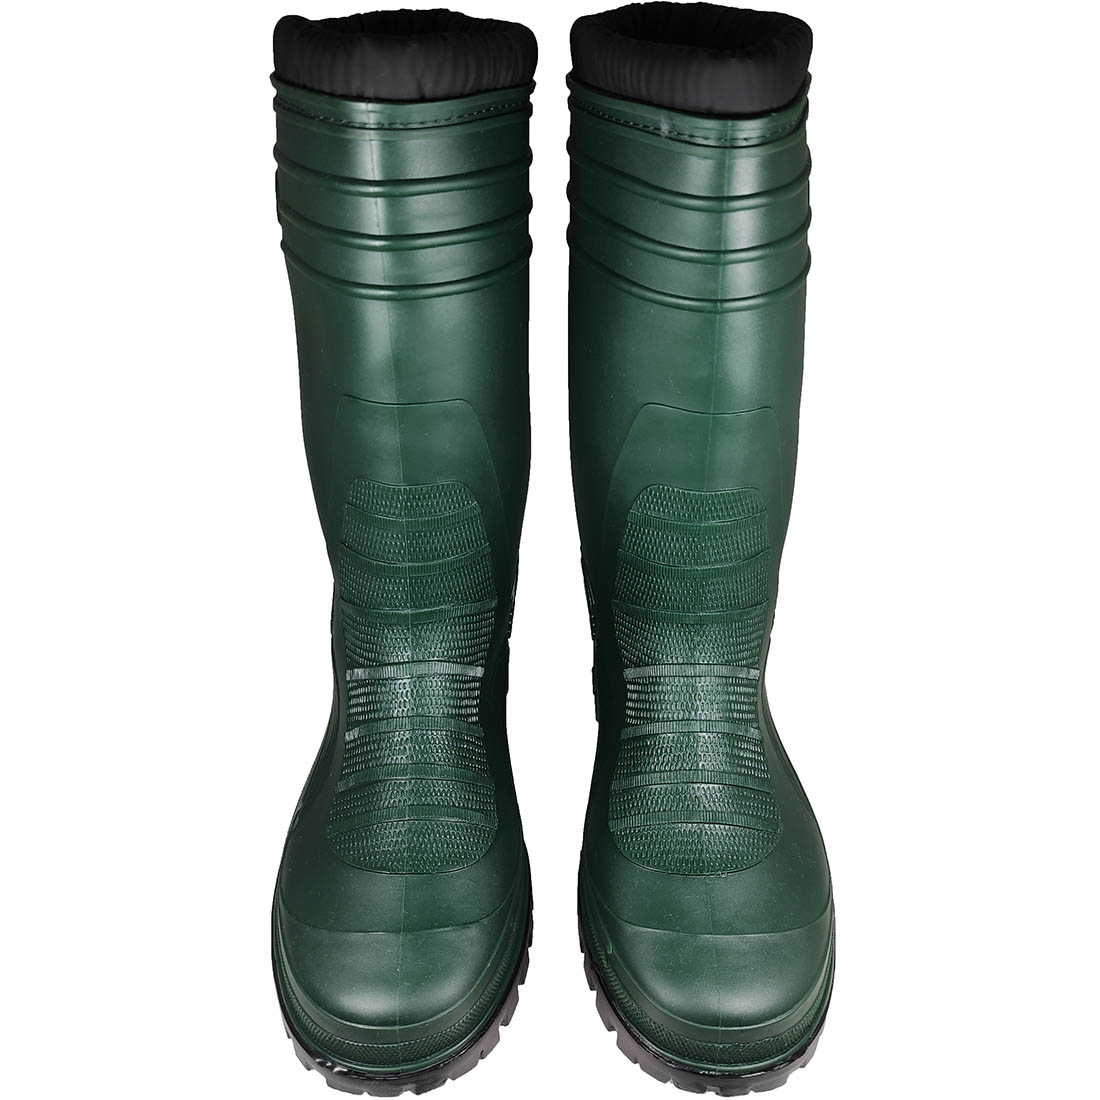 G&G Husky Green Boots for Men